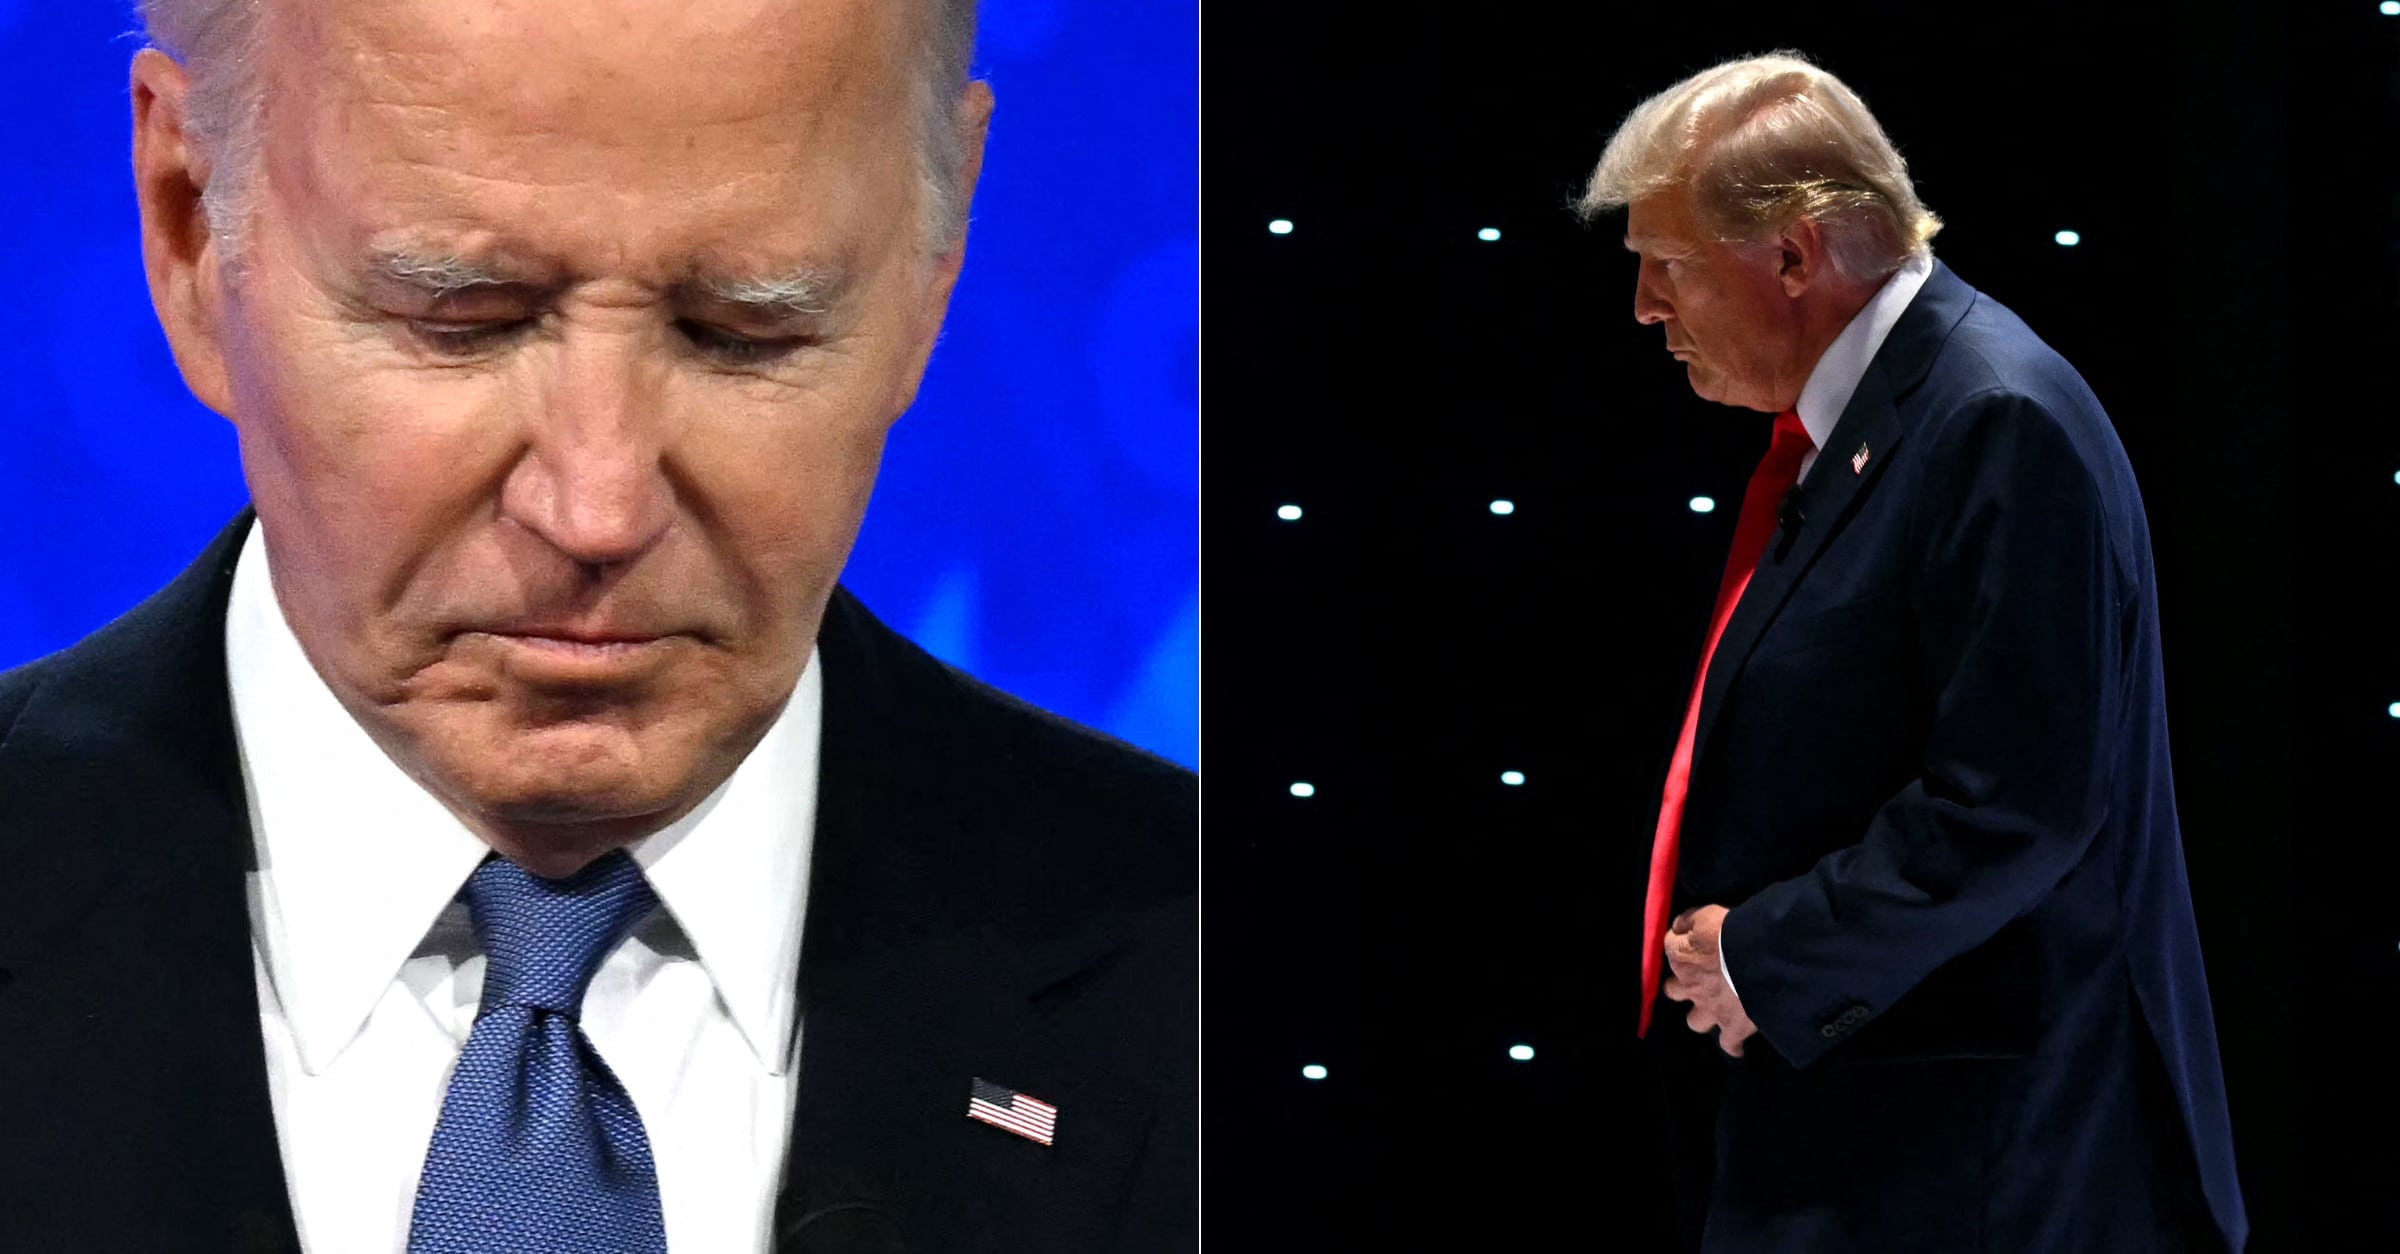 La actuación de Joe Biden en el debate contra Trump generó controversia y dudas sobre su capacidad para un segundo mandato.